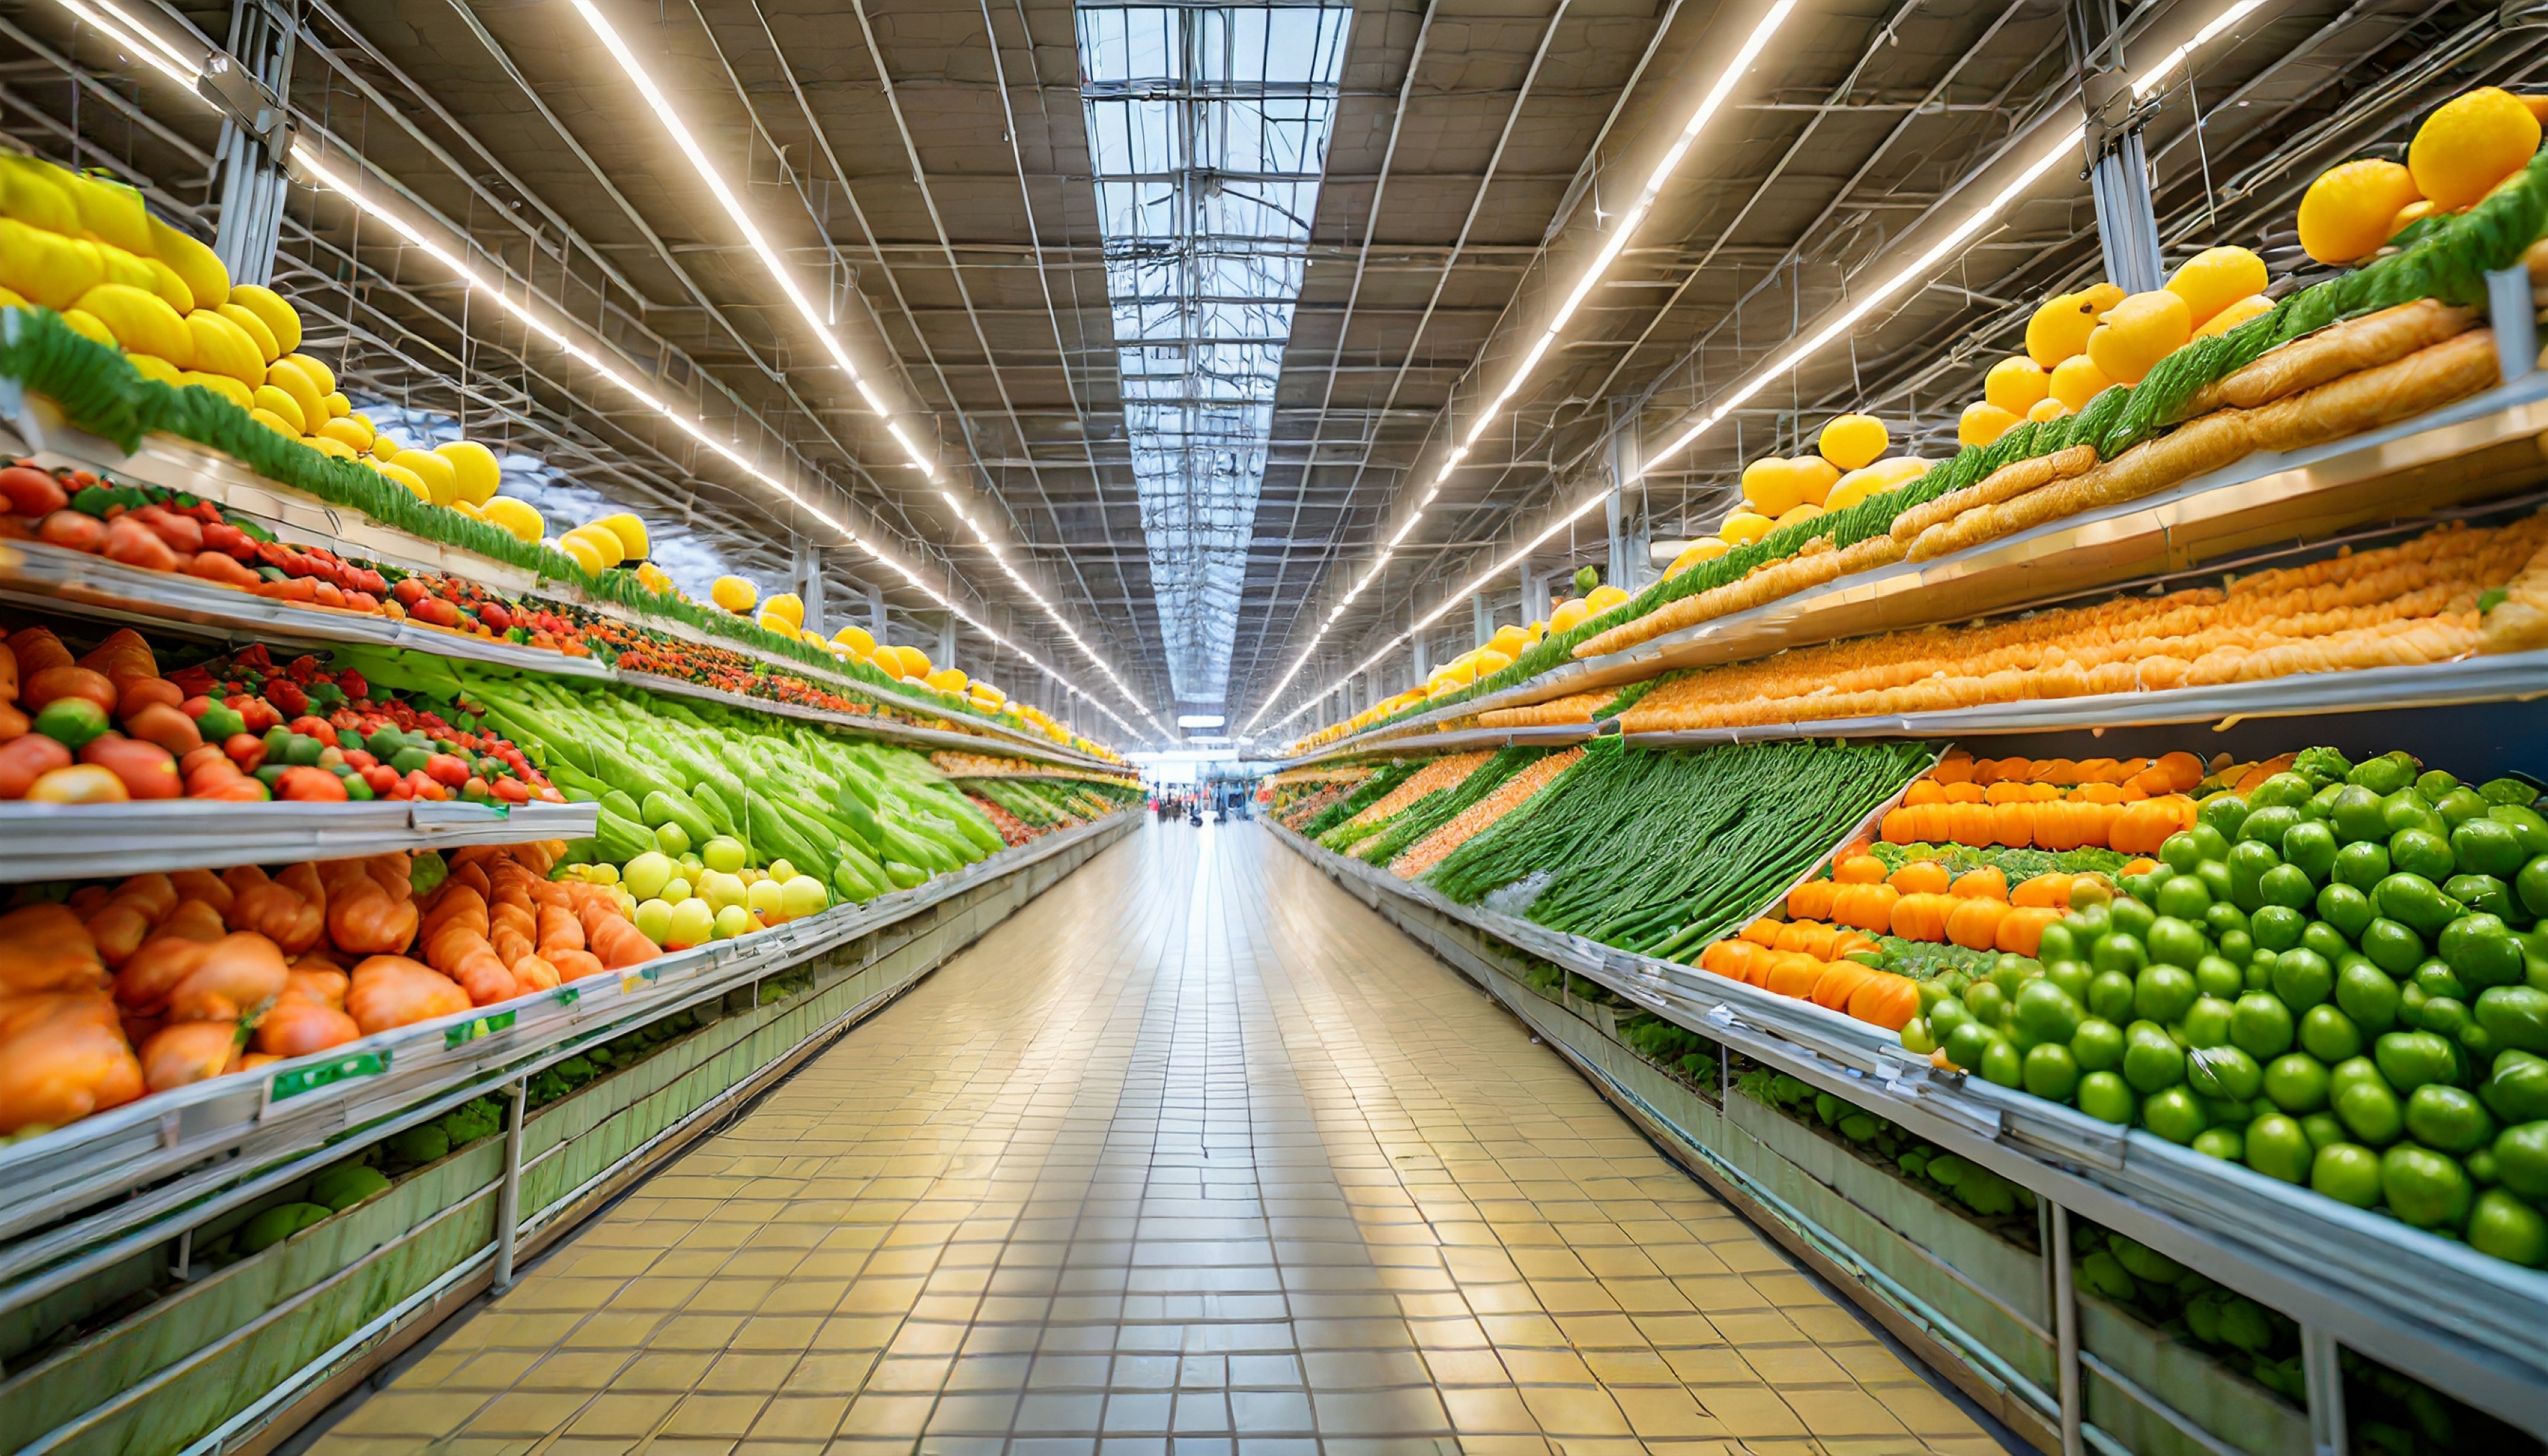 Notre rapport à la consommation de végétaux (et donc de fibres) a changé avec l'industrialisation. © Nichole, Adobe Stock